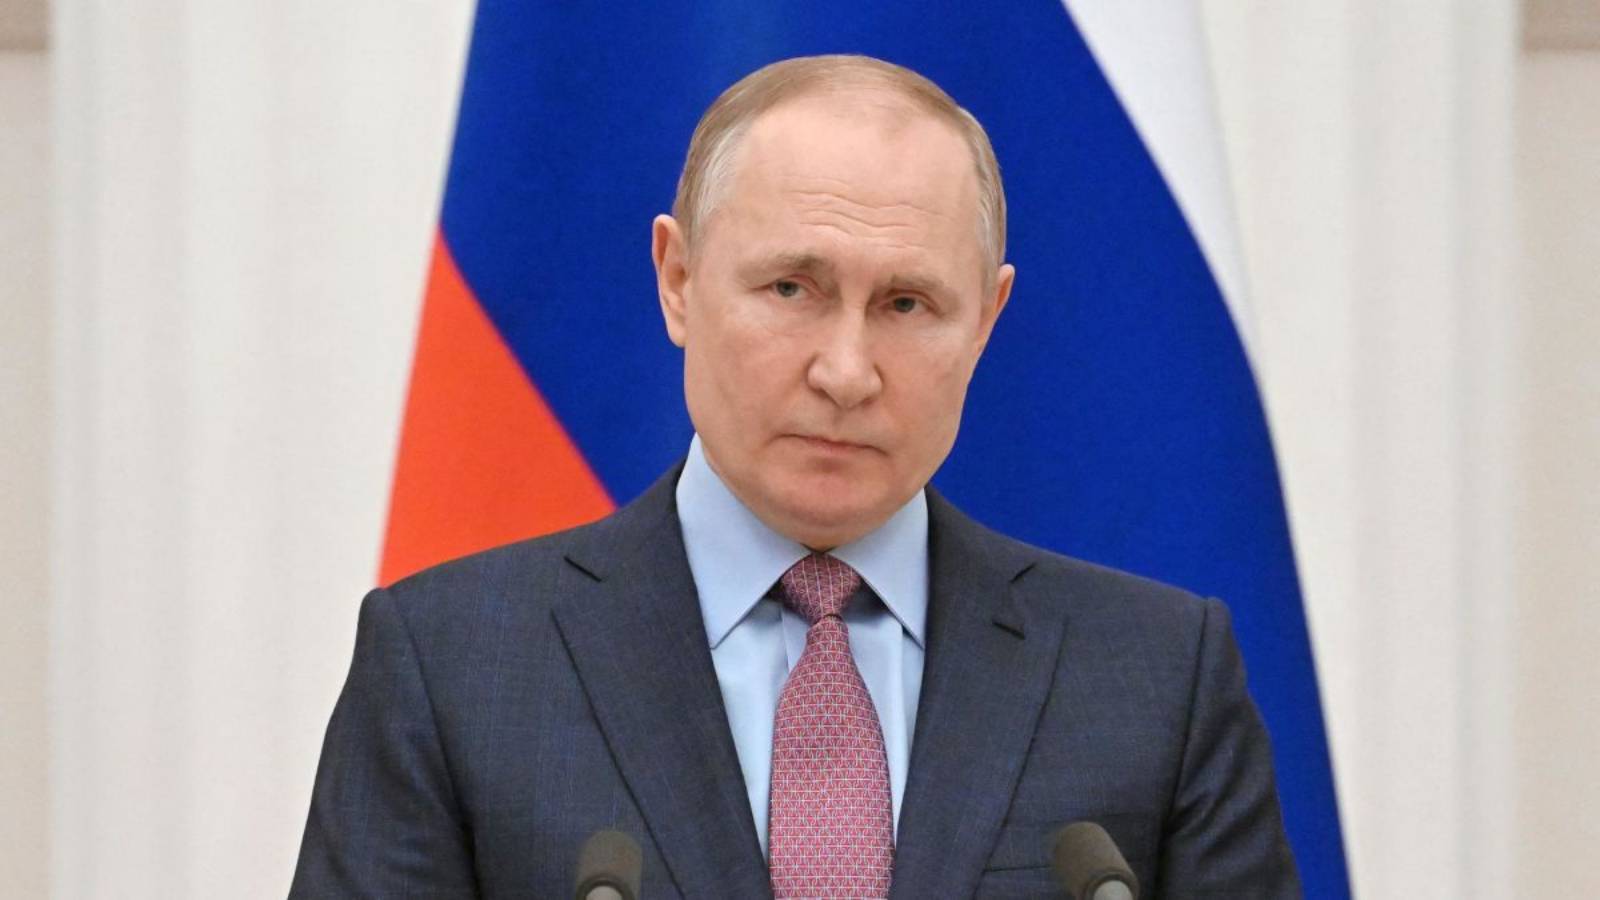 Decreto Vladimir Putin Importante decisione sull'Ucraina